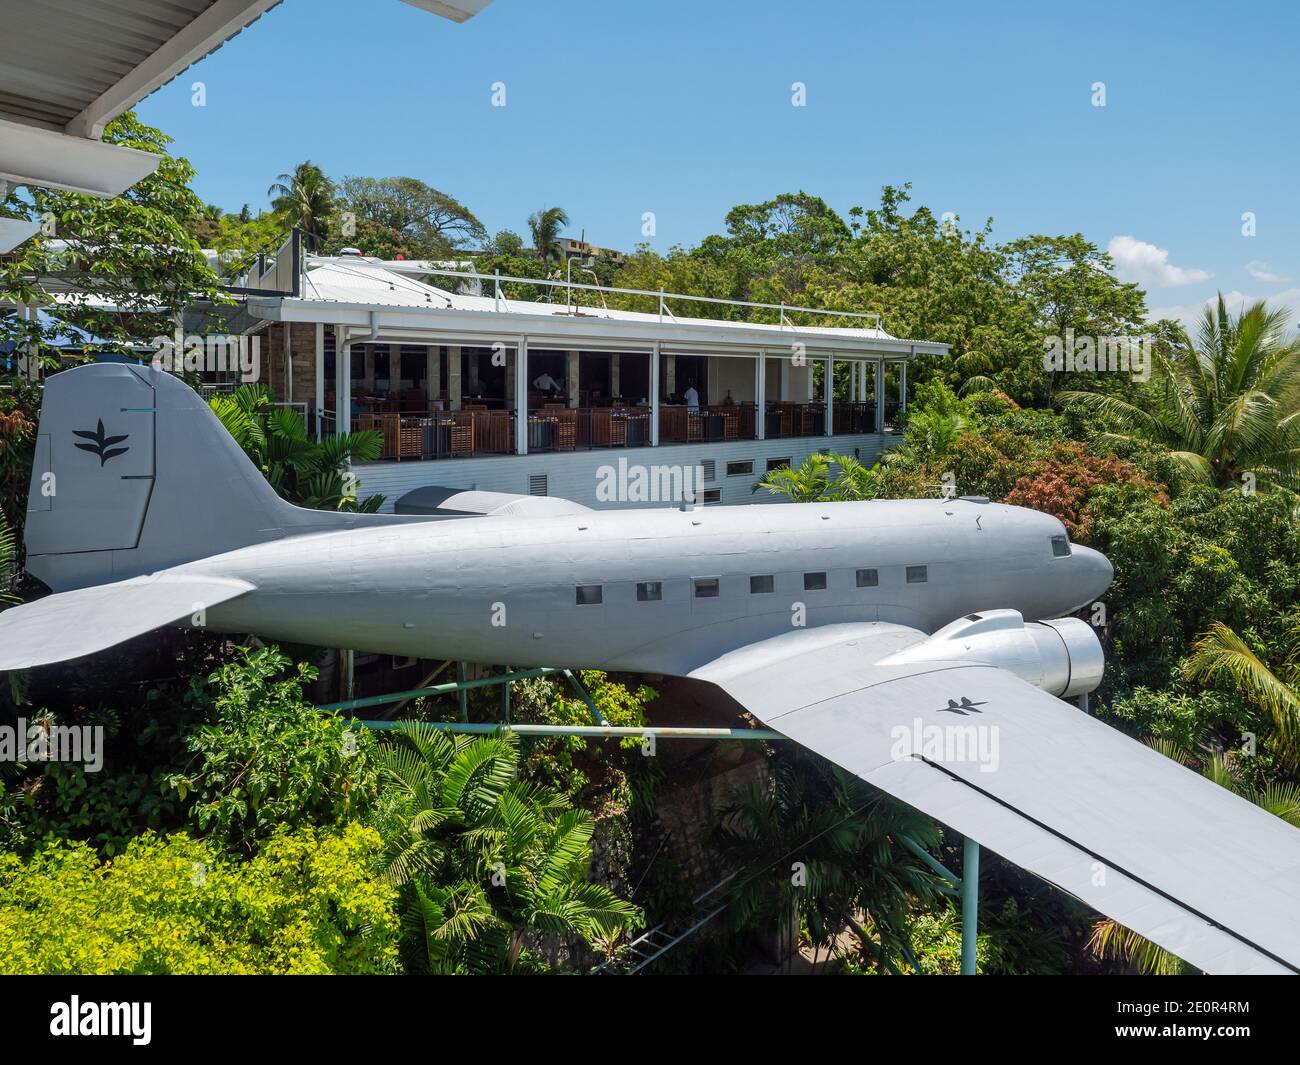 L'avion DC-3 de Vintage Douglas est exposé à l'hôtel Airways, l'hôtel de luxe situé à proximité de l'aéroport international de Jacksons à Port Moresby, la capitale de Pa Banque D'Images